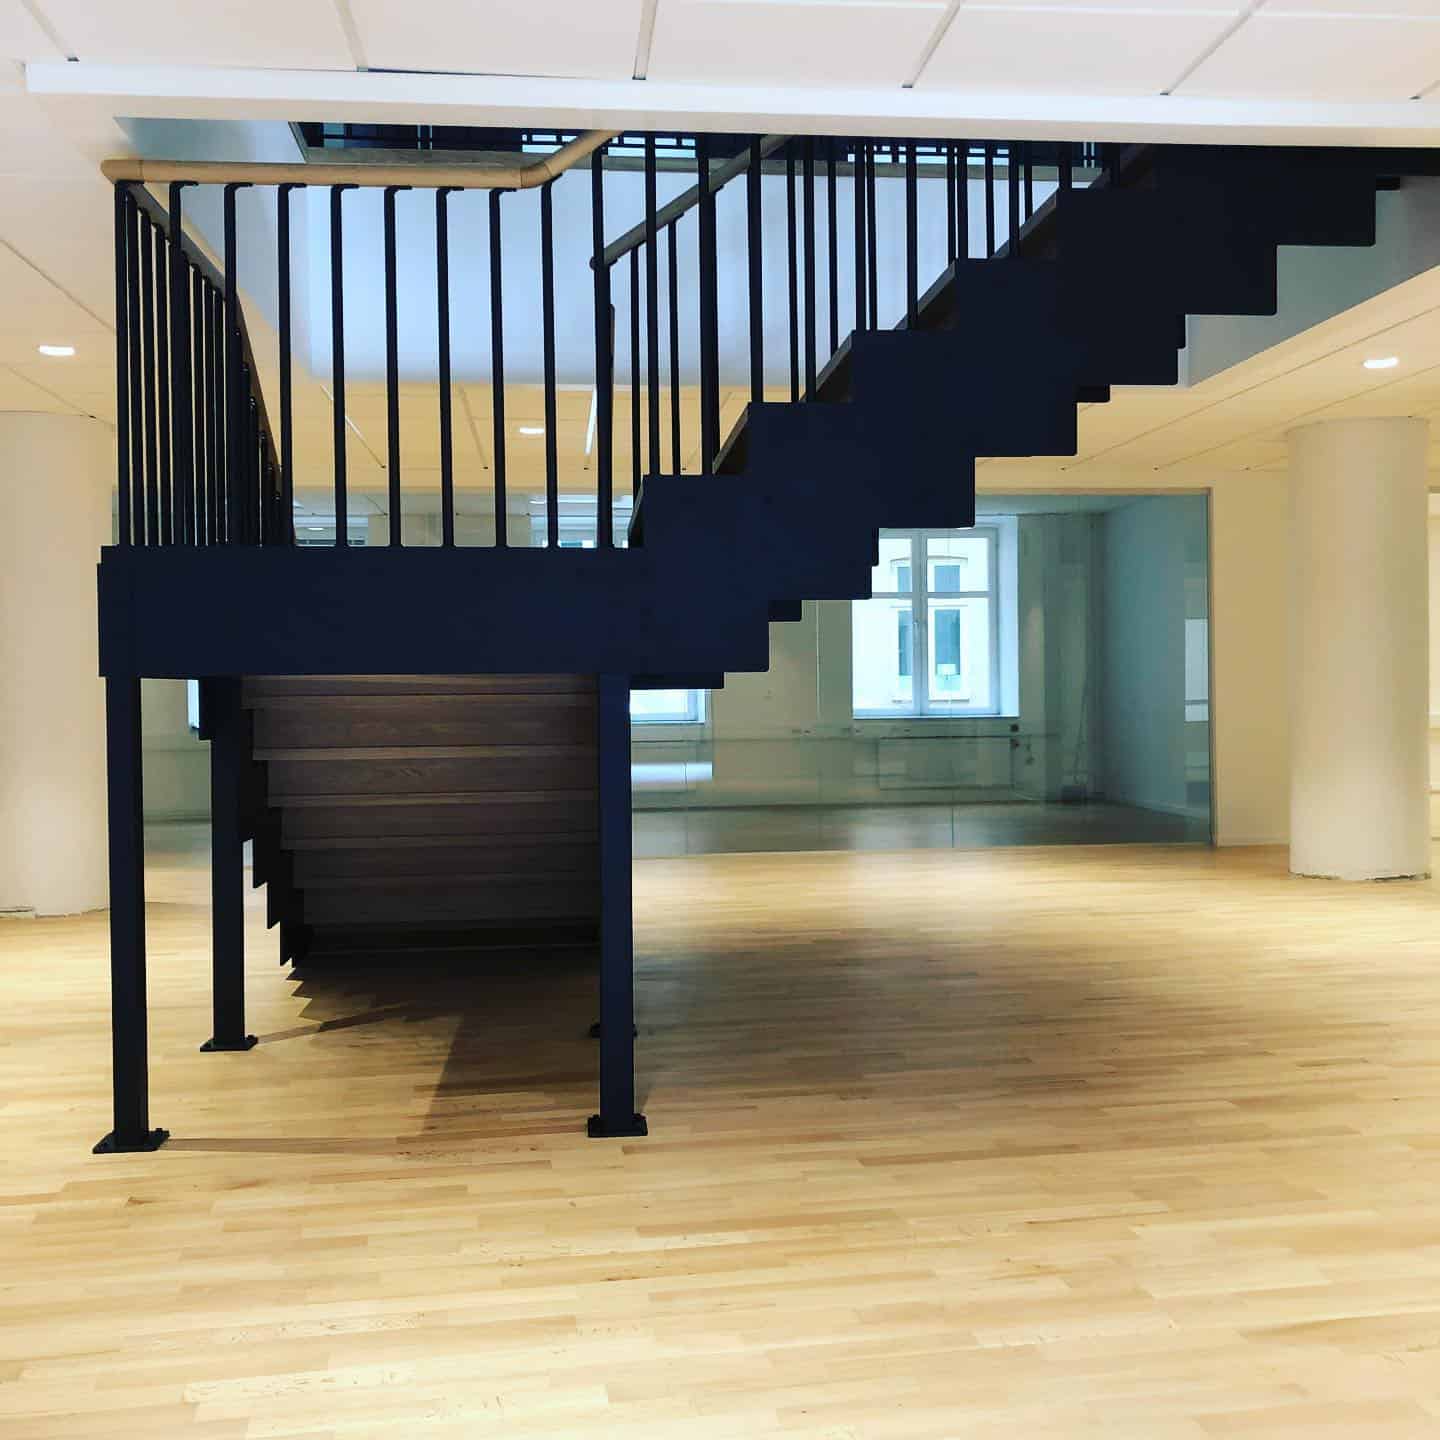 Referensjobb "Z trappa" utfört av Malmö Bygg och Montage AB